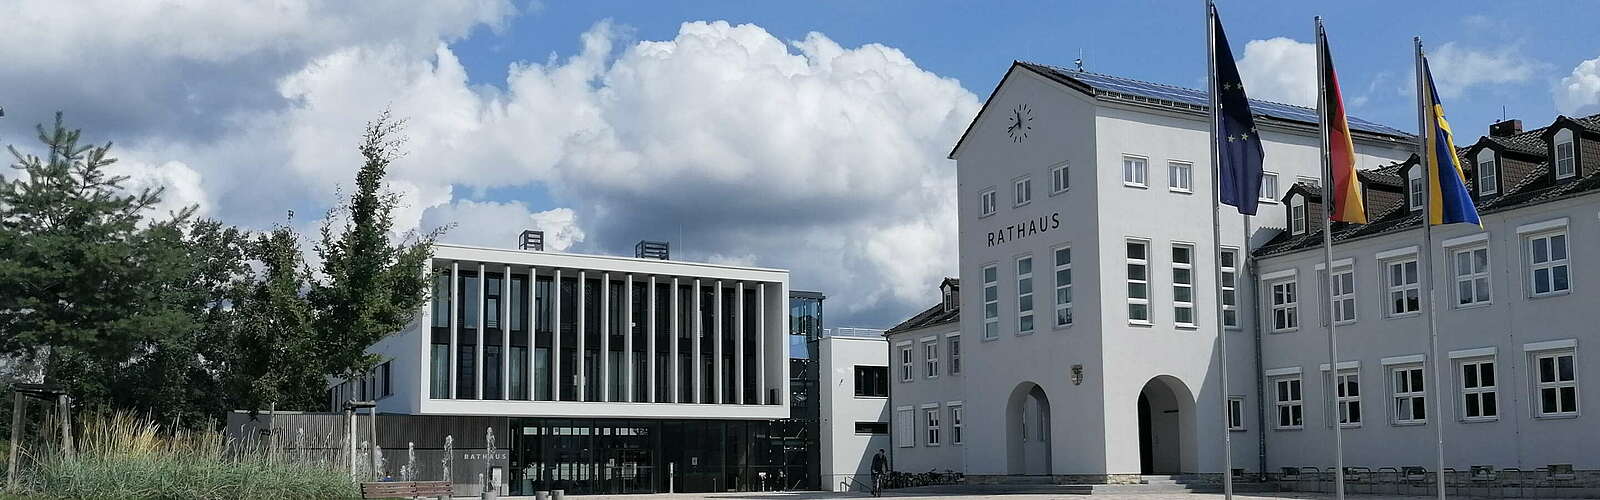 Das Rathaus in Hohen Neuendorf,
        
    

        
            Foto: Tourismusverband Ruppiner Seenland e.V.